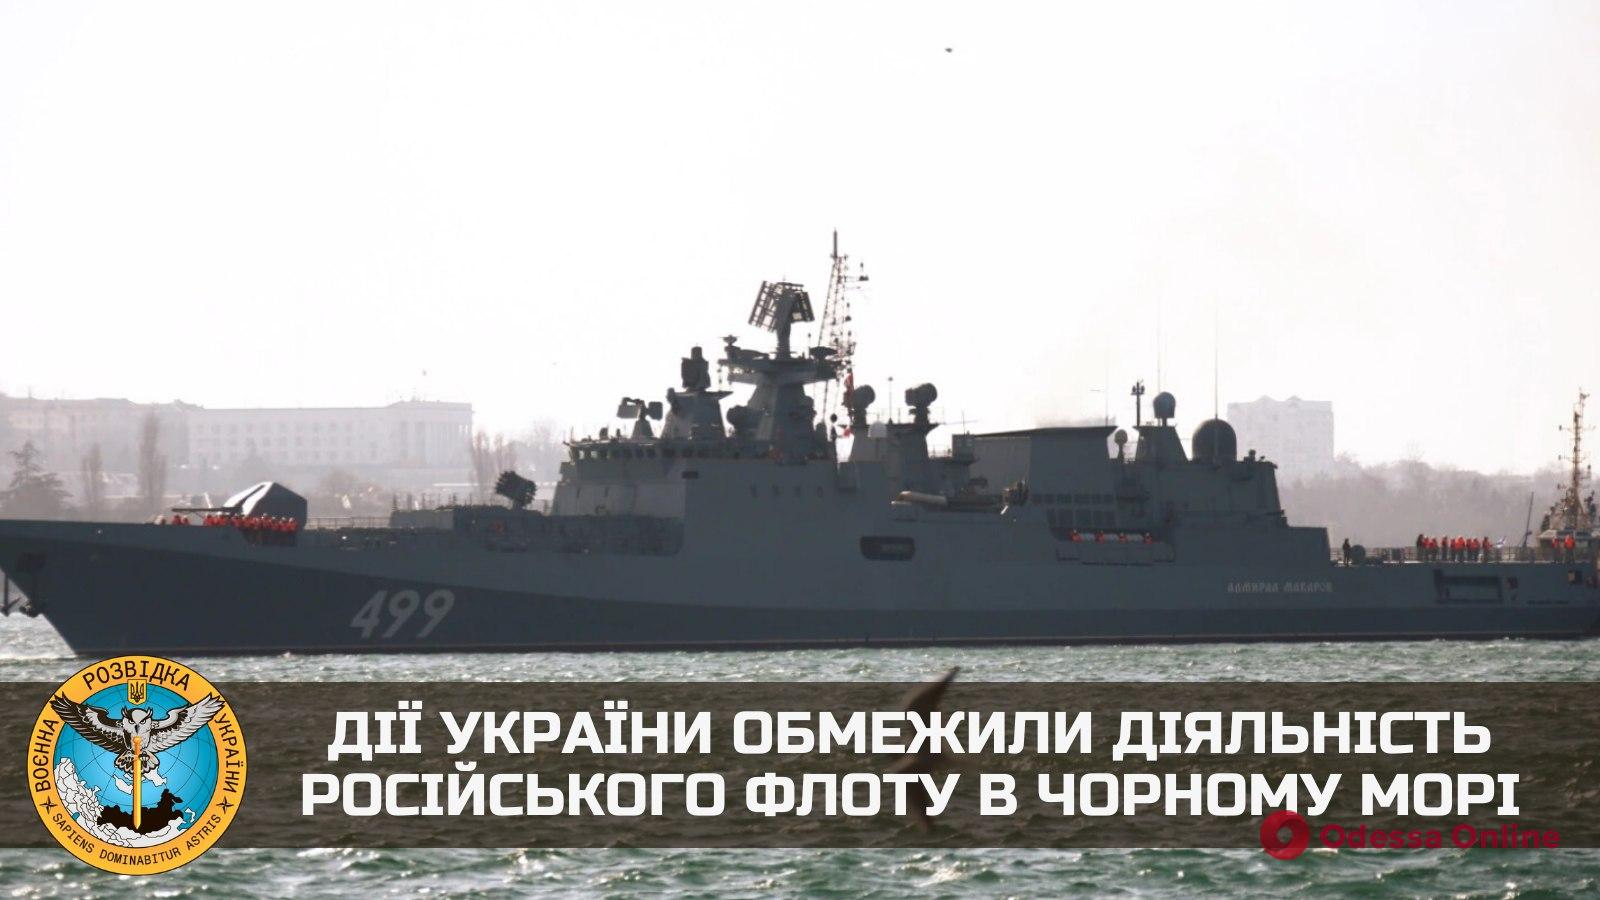 Разведка: действия Украины ограничили деятельность российского флота в Черном море